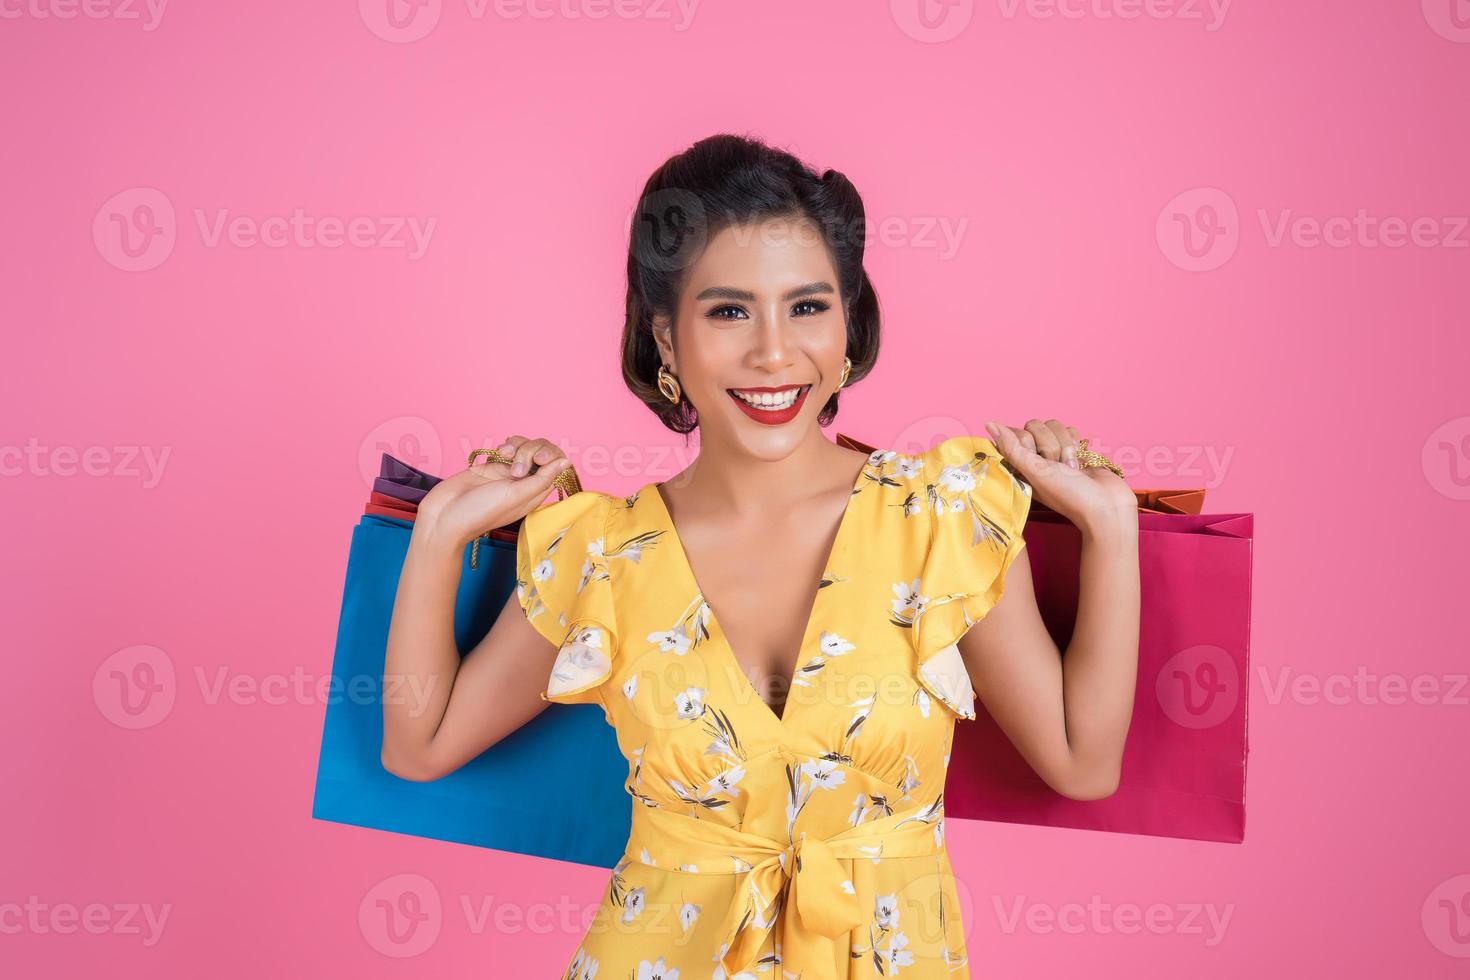 schöne asiatische Frau, die farbige Einkaufstaschen hält foto